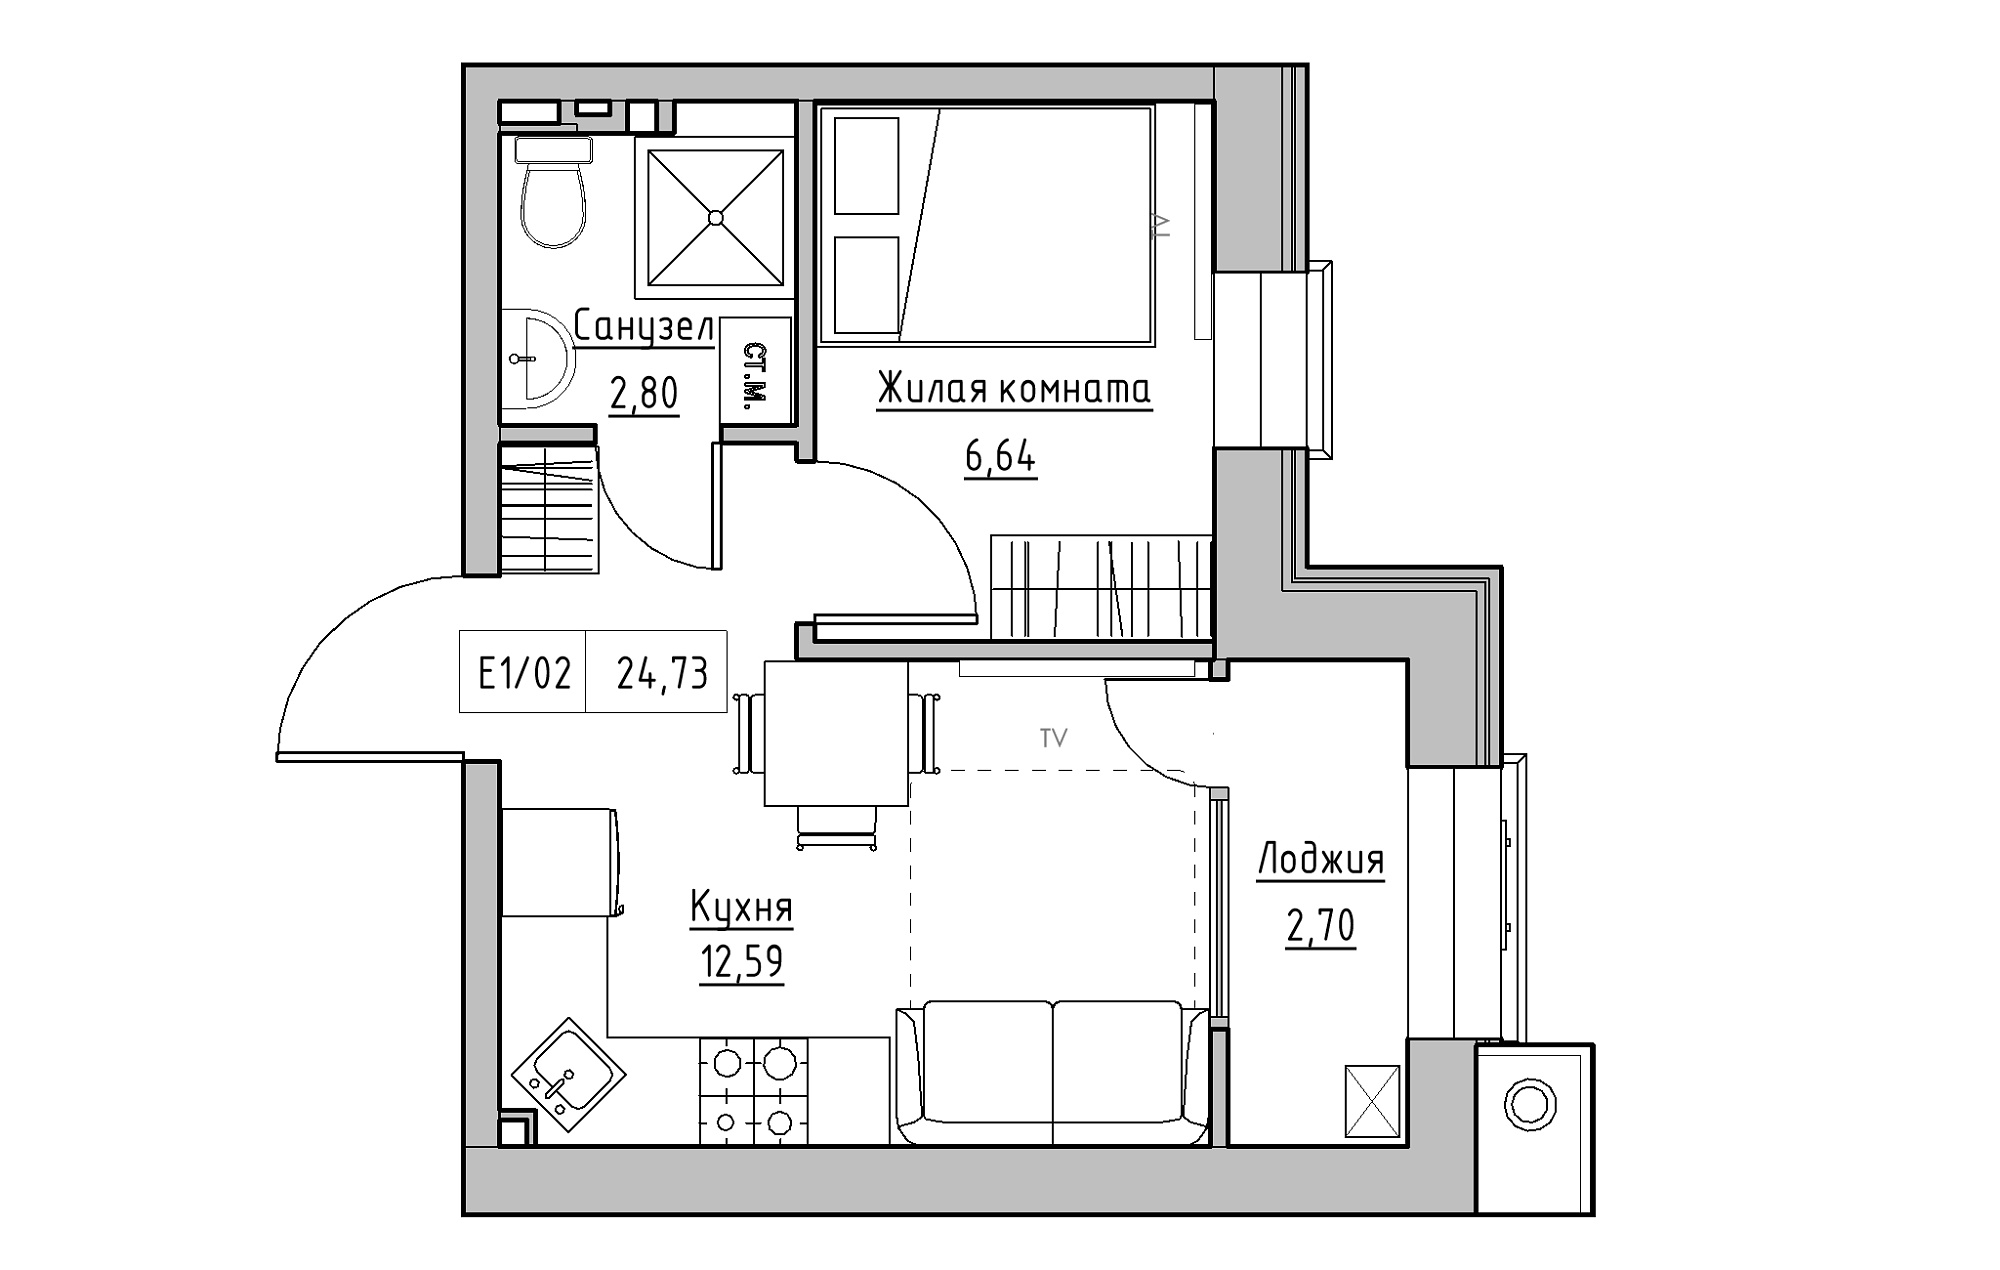 Планировка 1-к квартира площей 24.73м2, KS-013-01/0001.